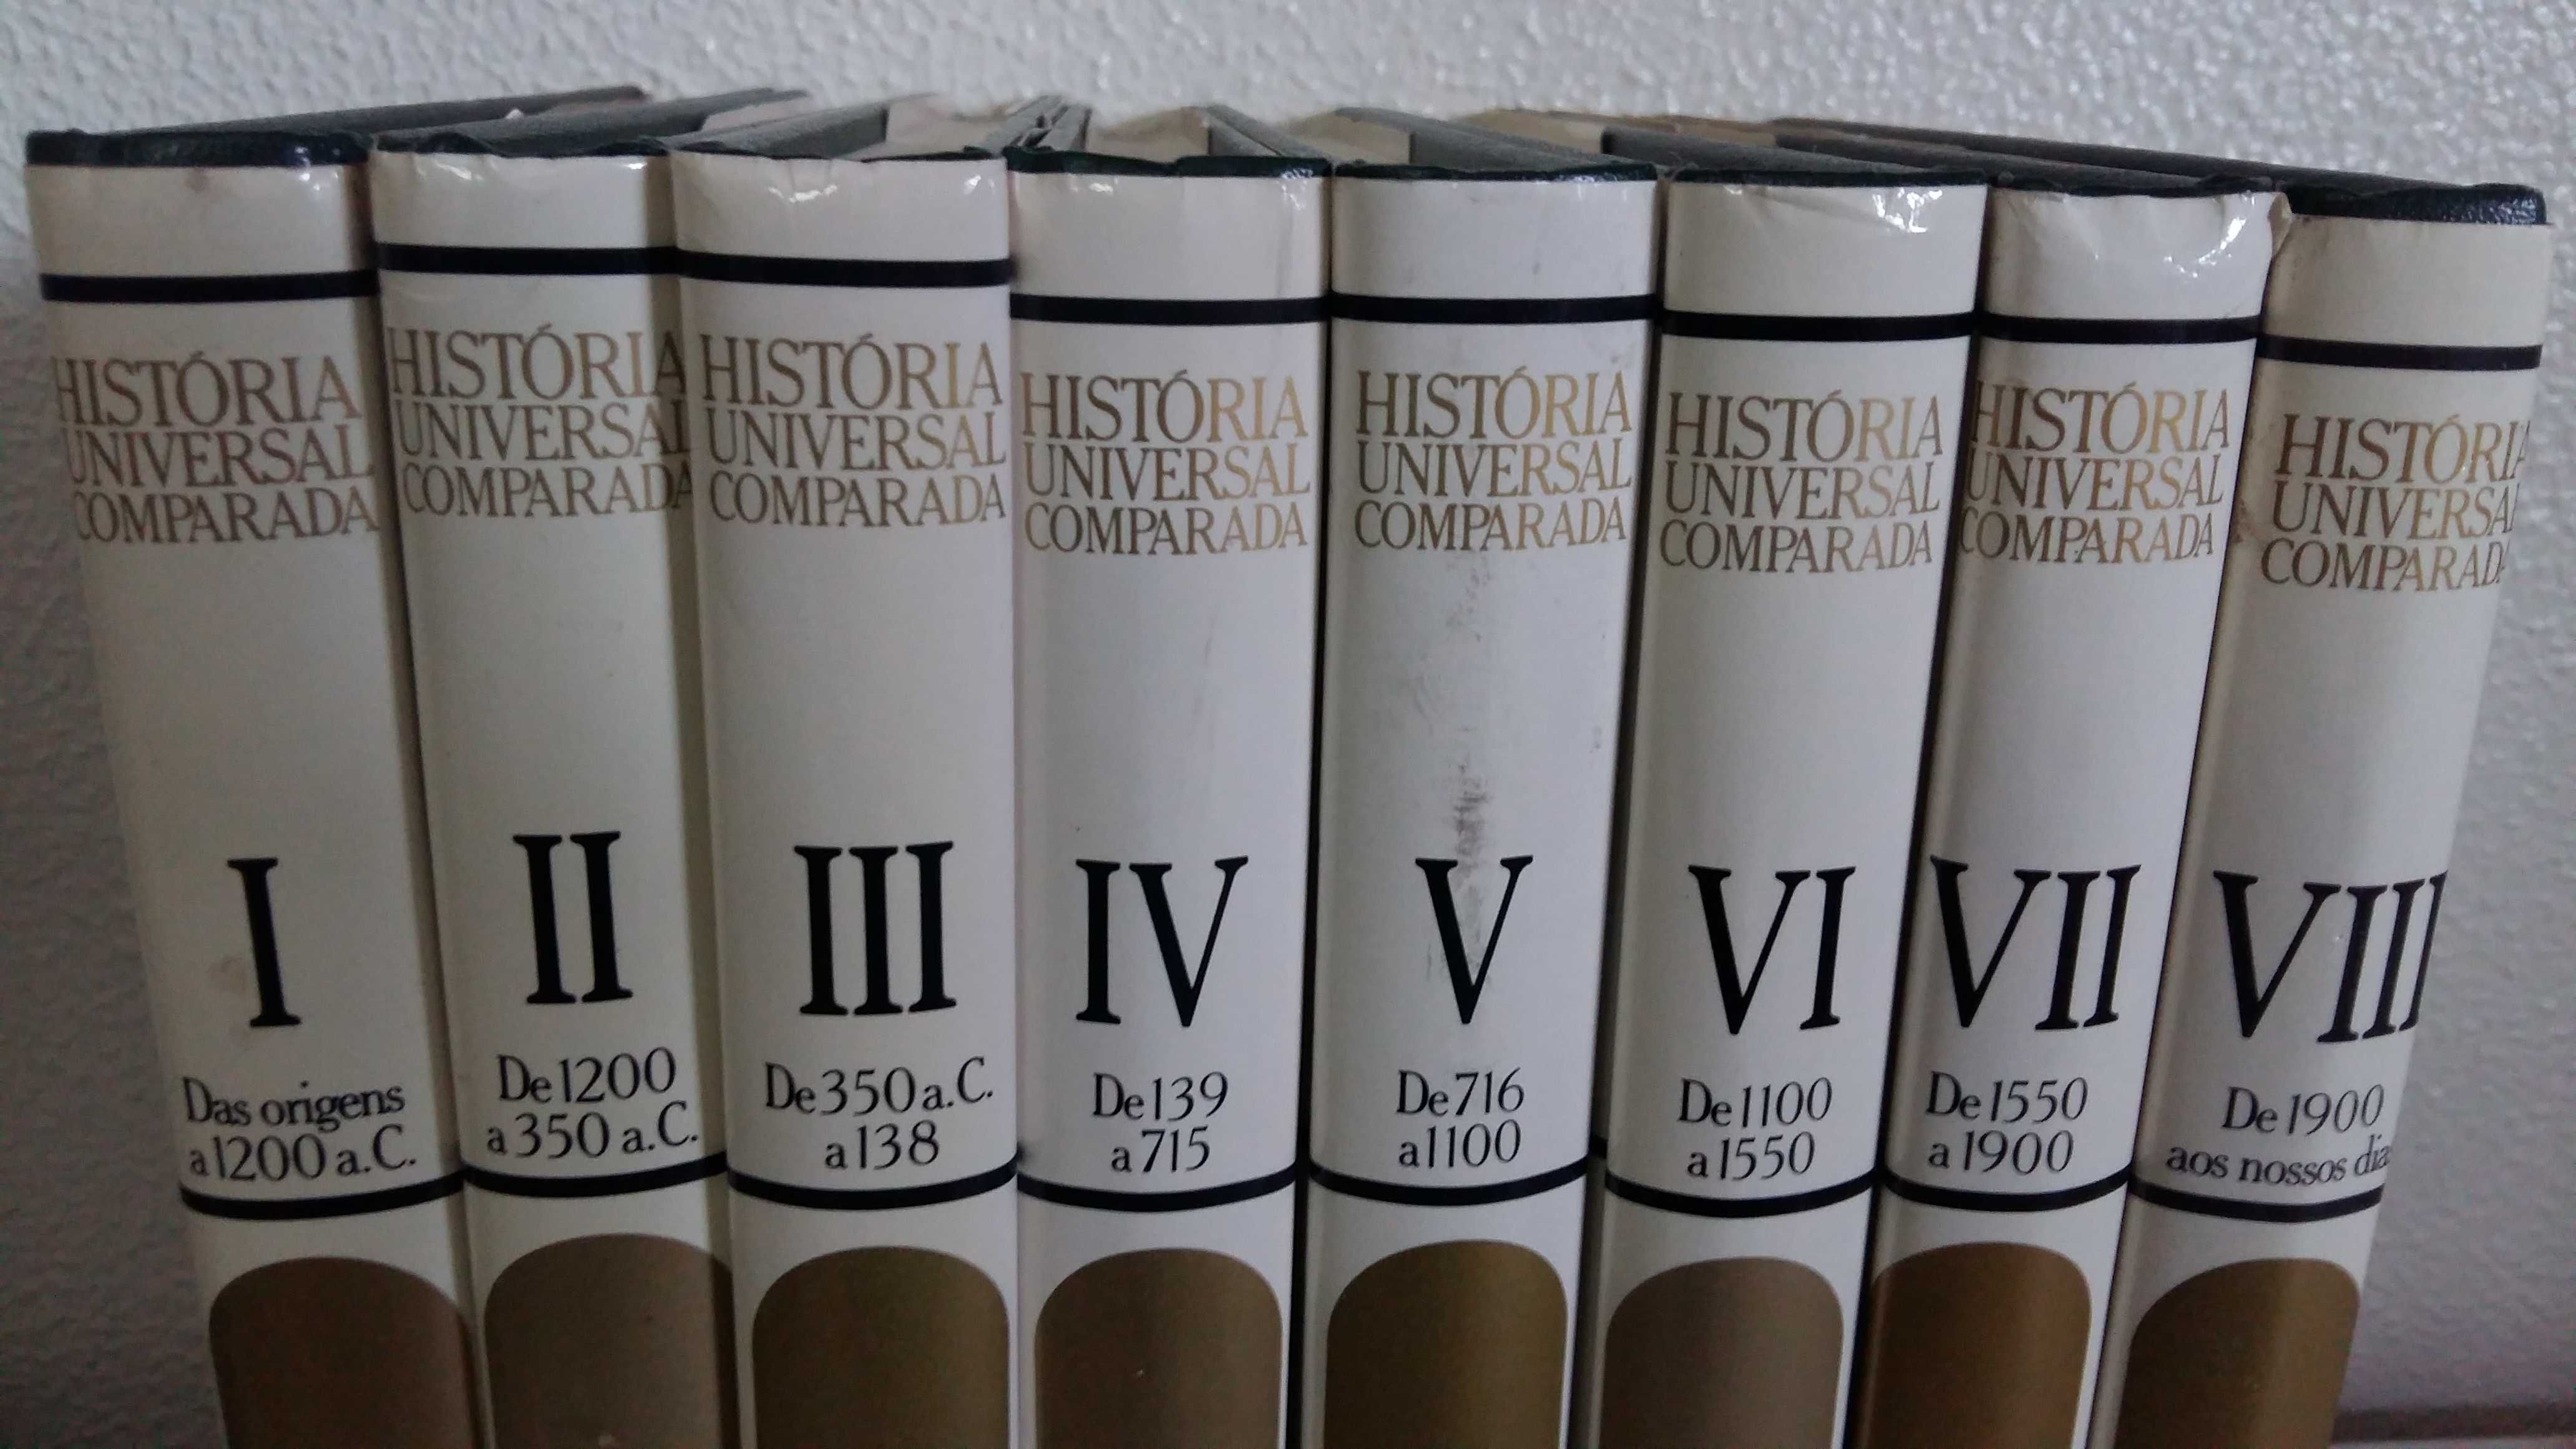 Livro Coleção História Universal Comparada